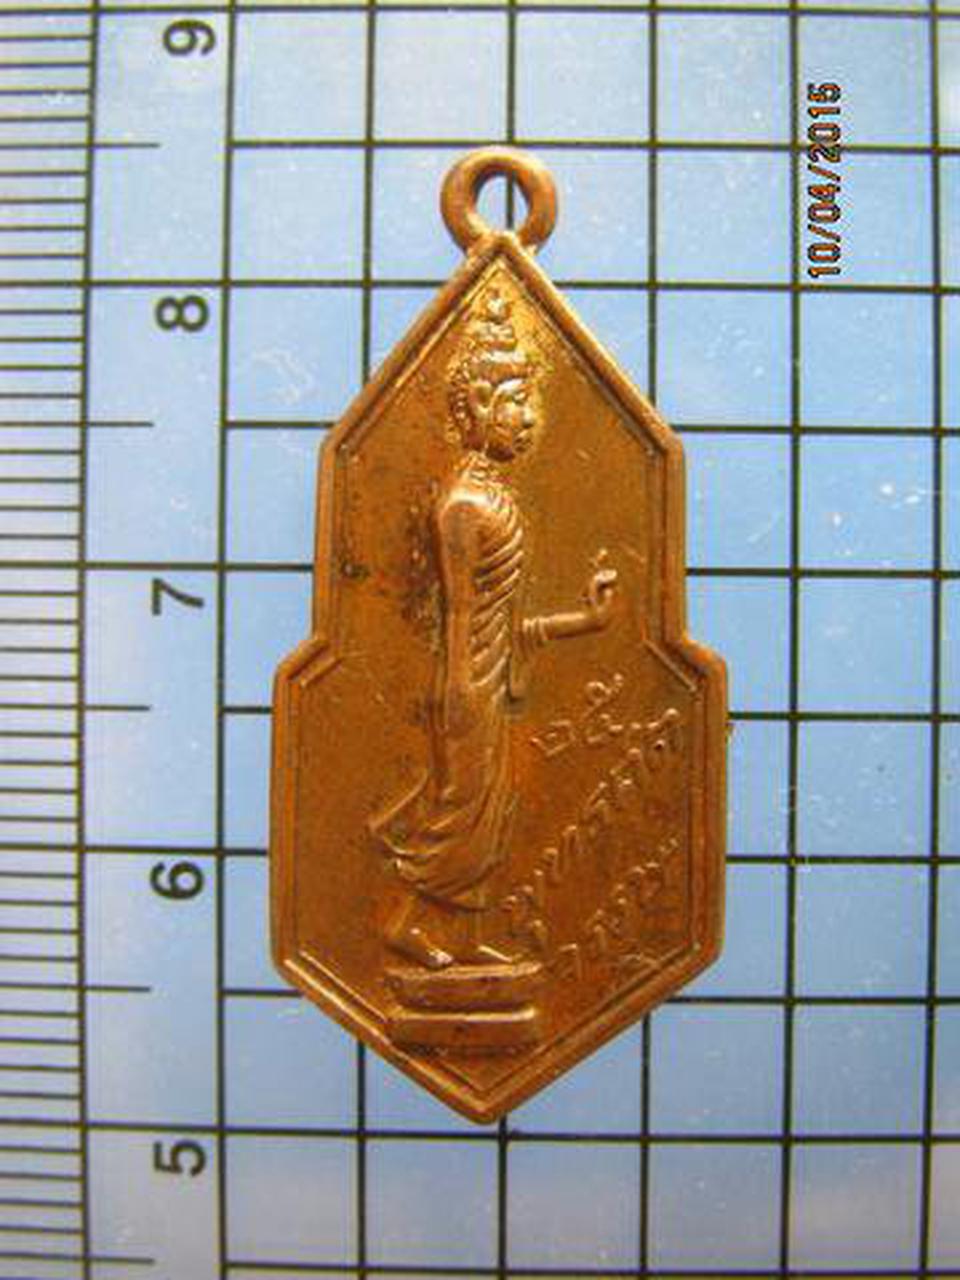 1574 เหรียญกึ่งพุทธกาล 25 พุทธศตวรรษ วัดมหาธาตุ จ.เพชรบุรี รูปเล็กที่ 2